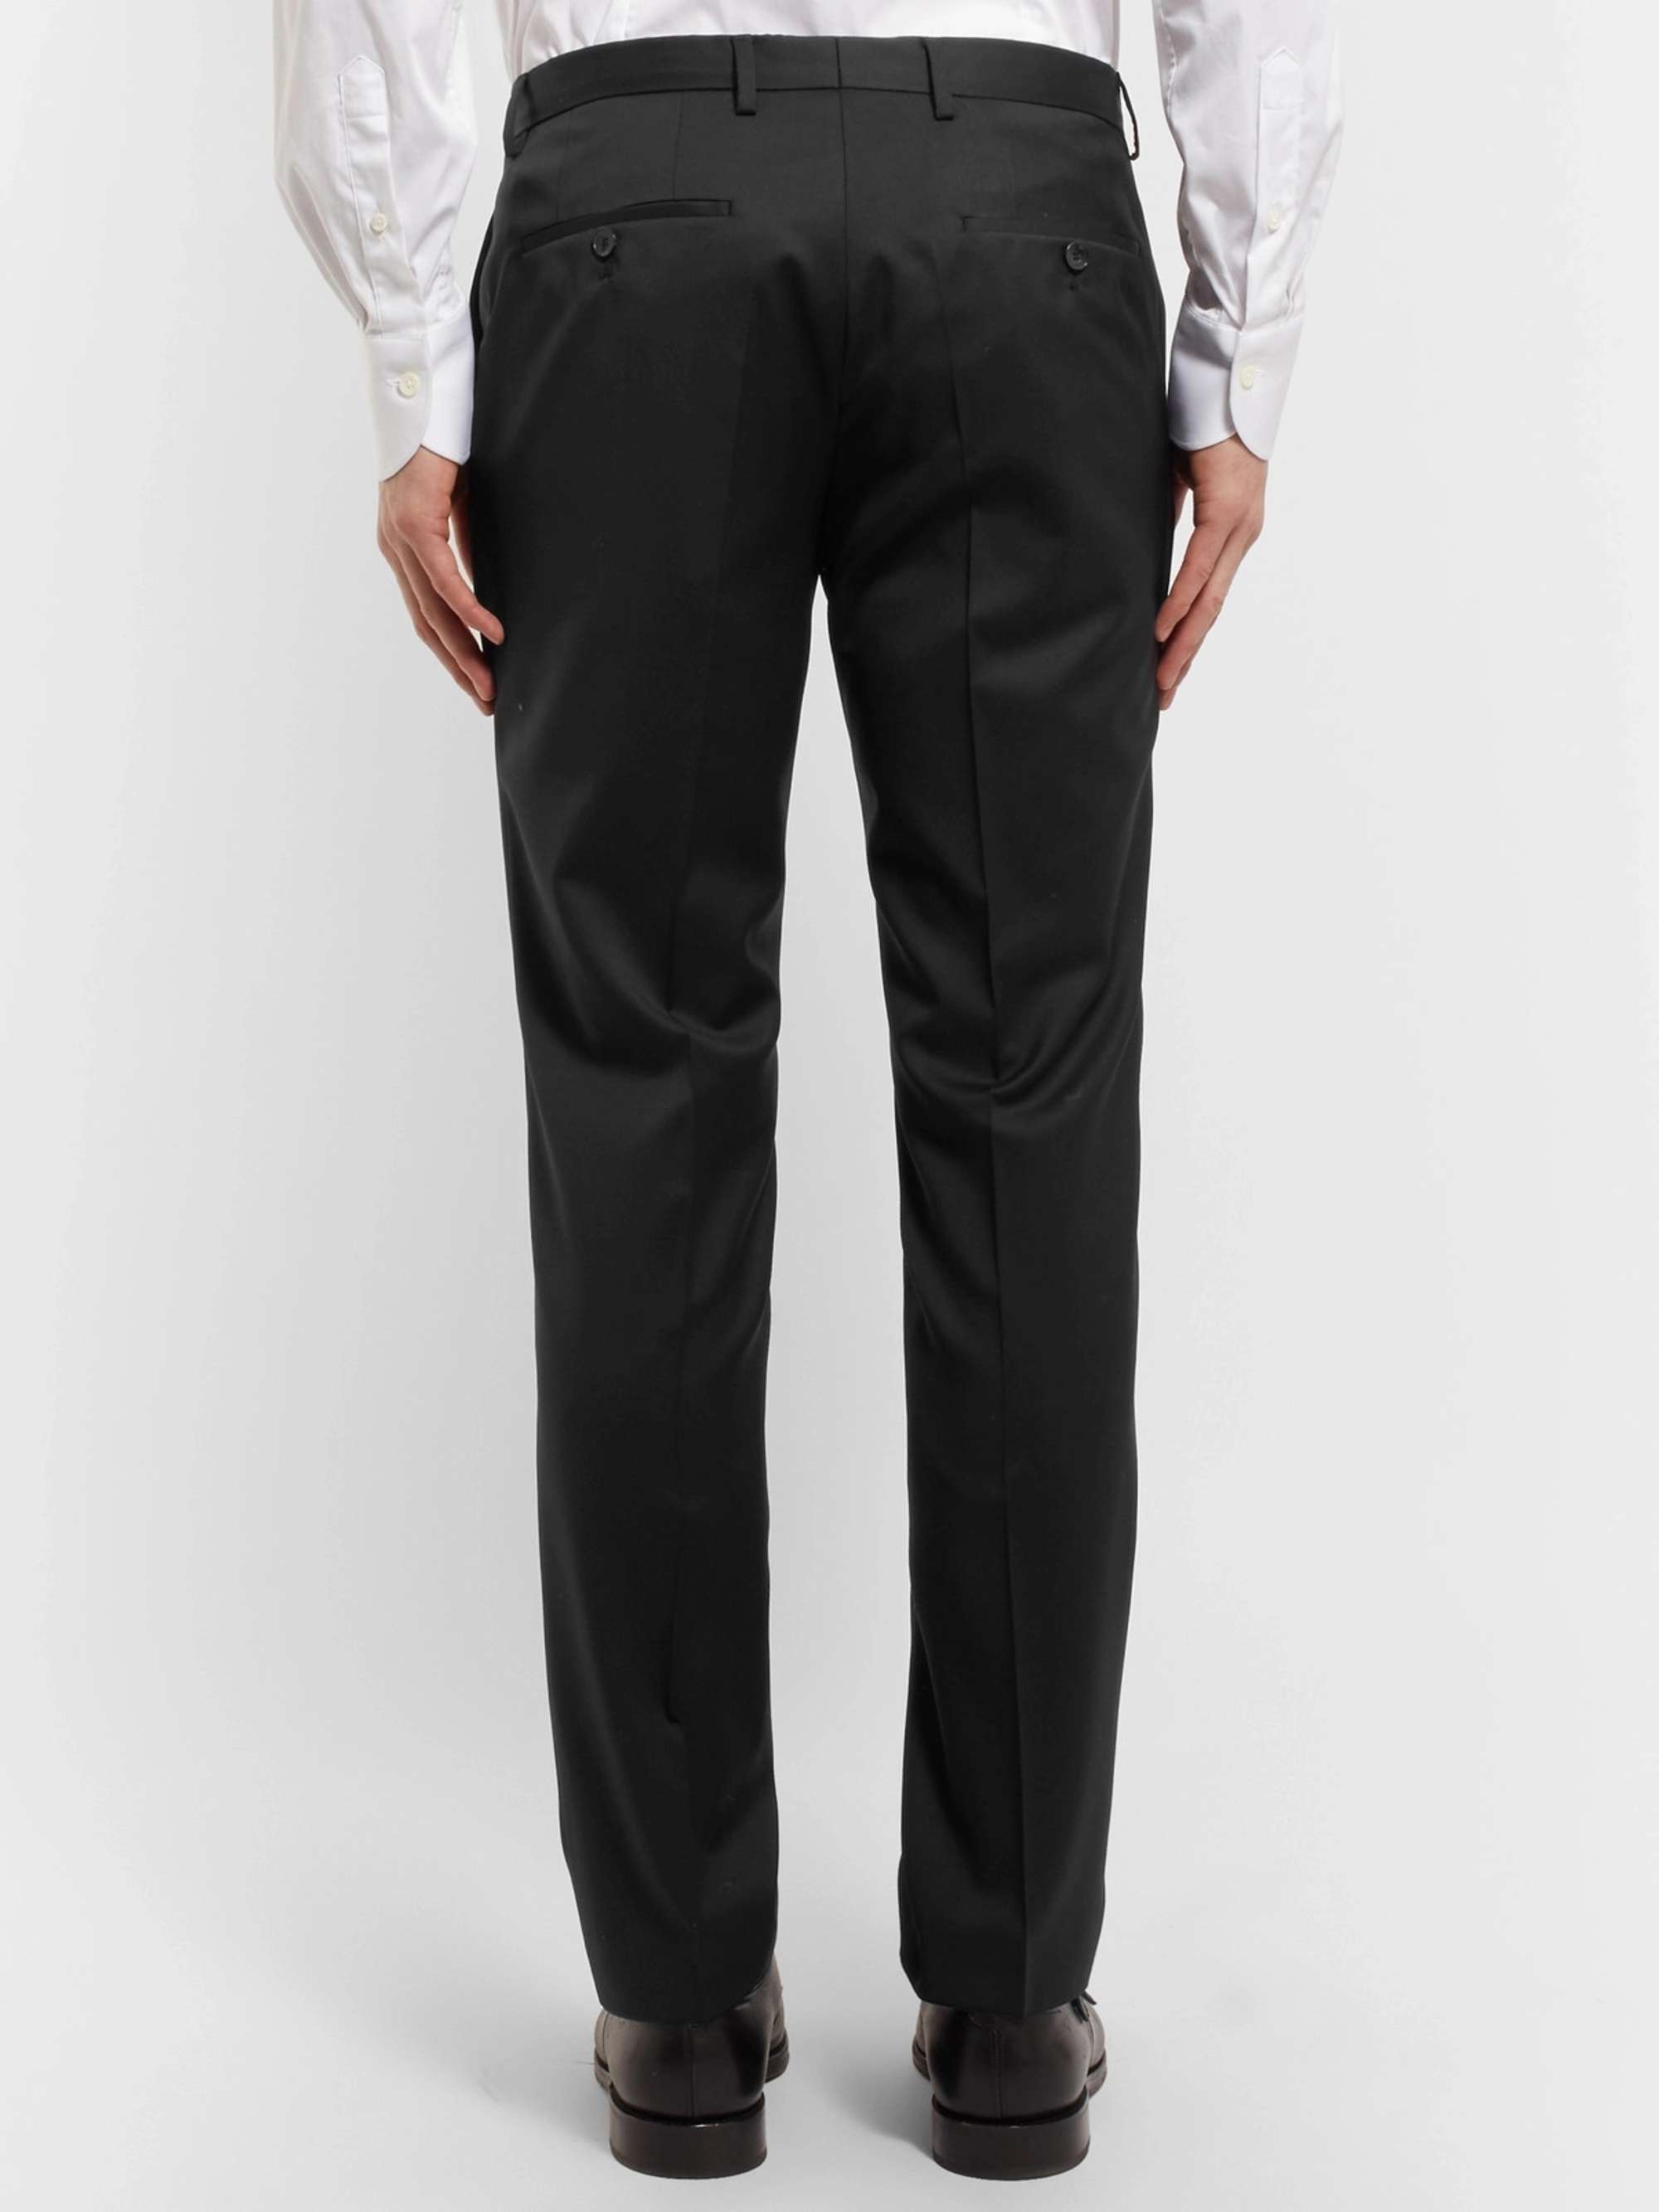 Mariner fortvivlelse Trives HUGO BOSS Black Gibson Slim-Fit Virgin Wool Suit Trousers for Men | MR  PORTER